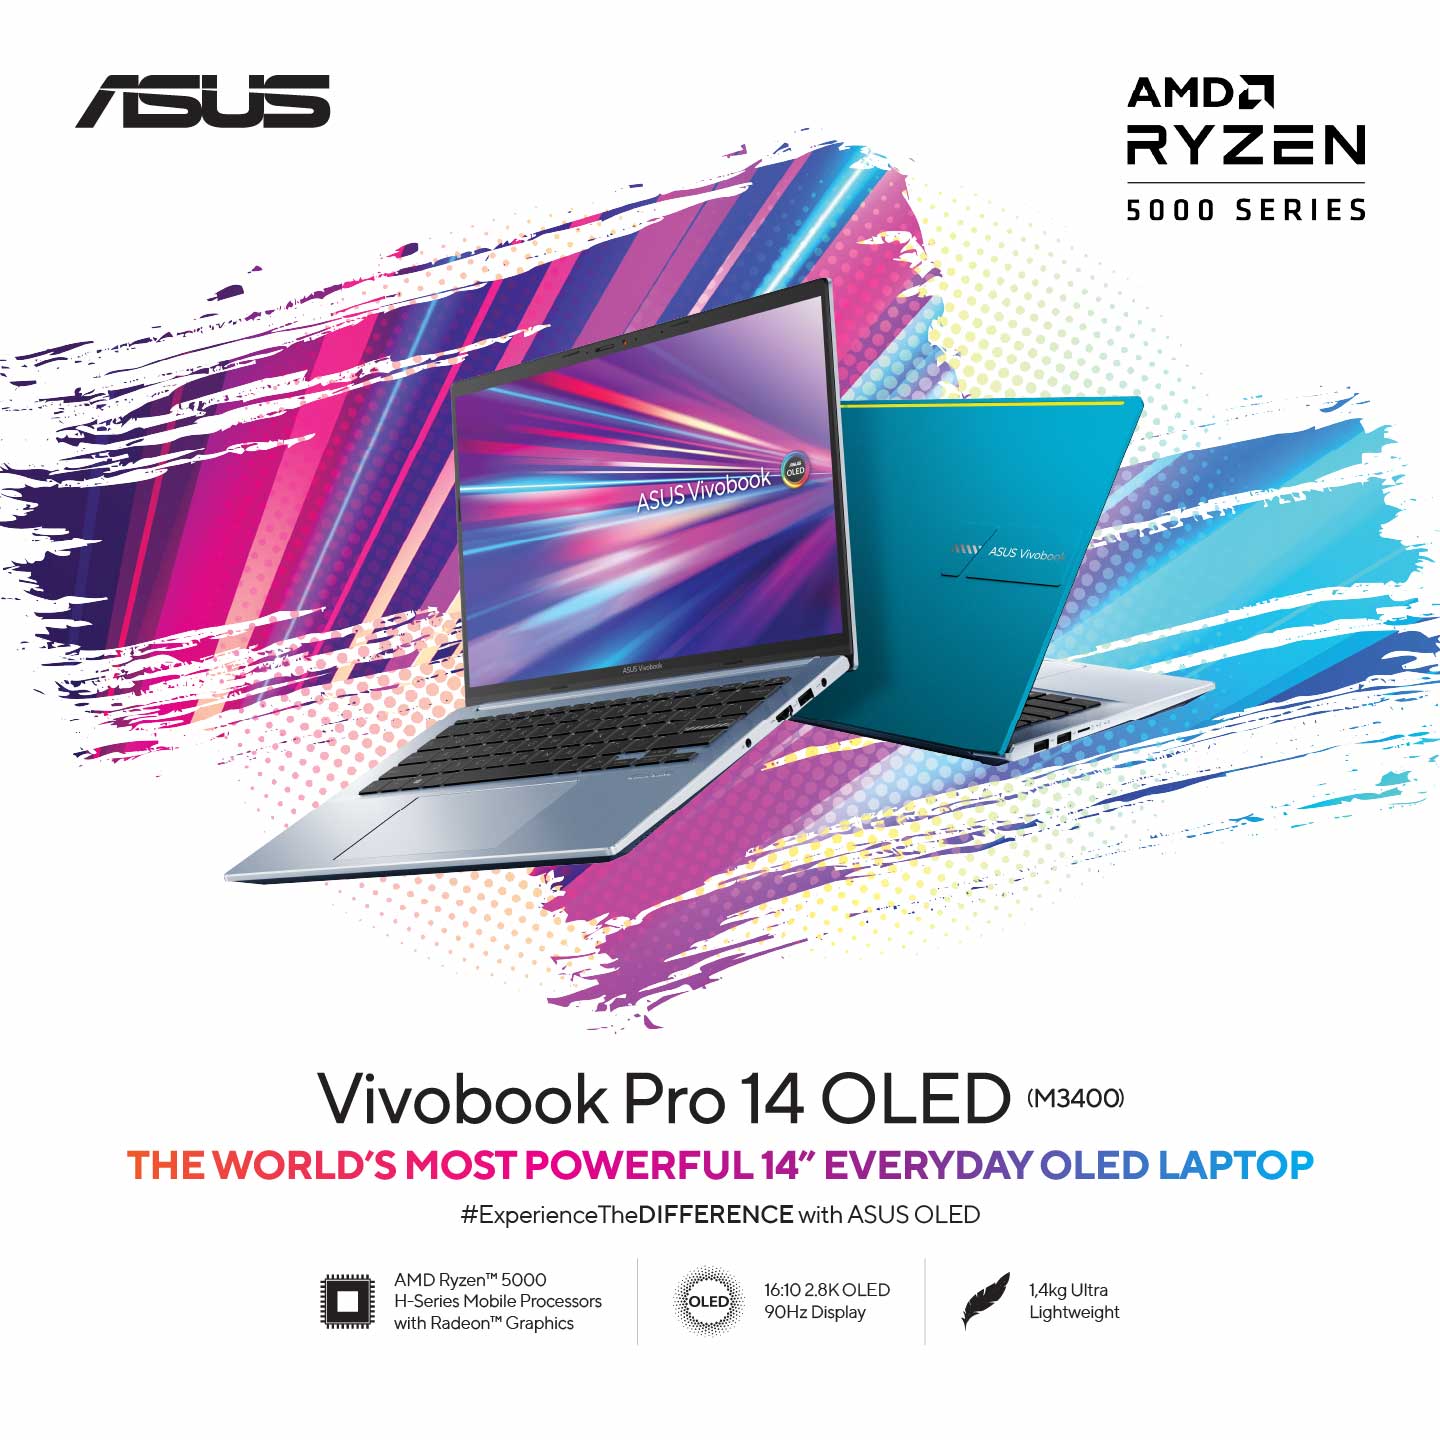  ASUS Vivobook Pro 14 OLED